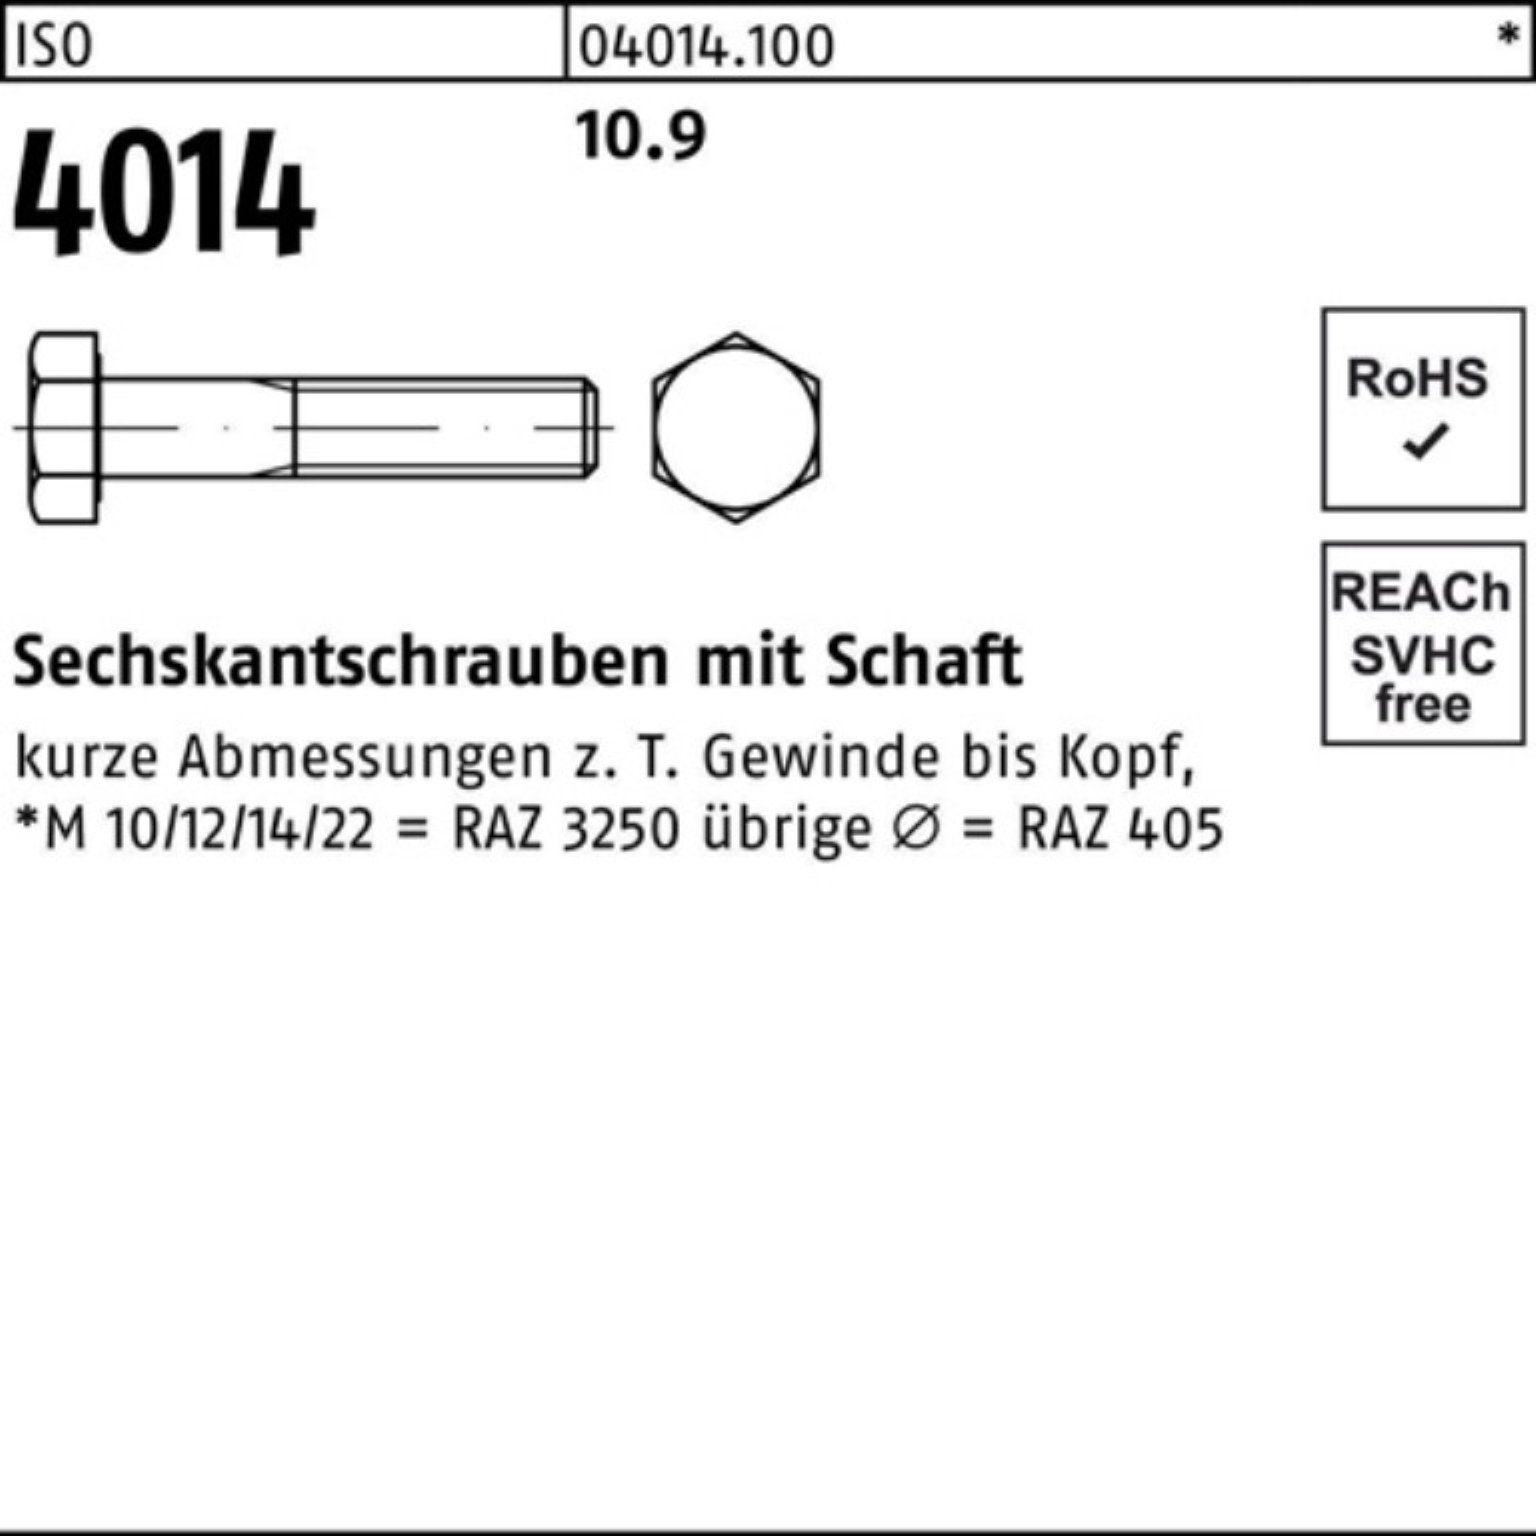 IS ISO Sechskantschraube Sechskantschraube 260 M27x 100er 10.9 4014 Pack Bufab 1 Stück Schaft